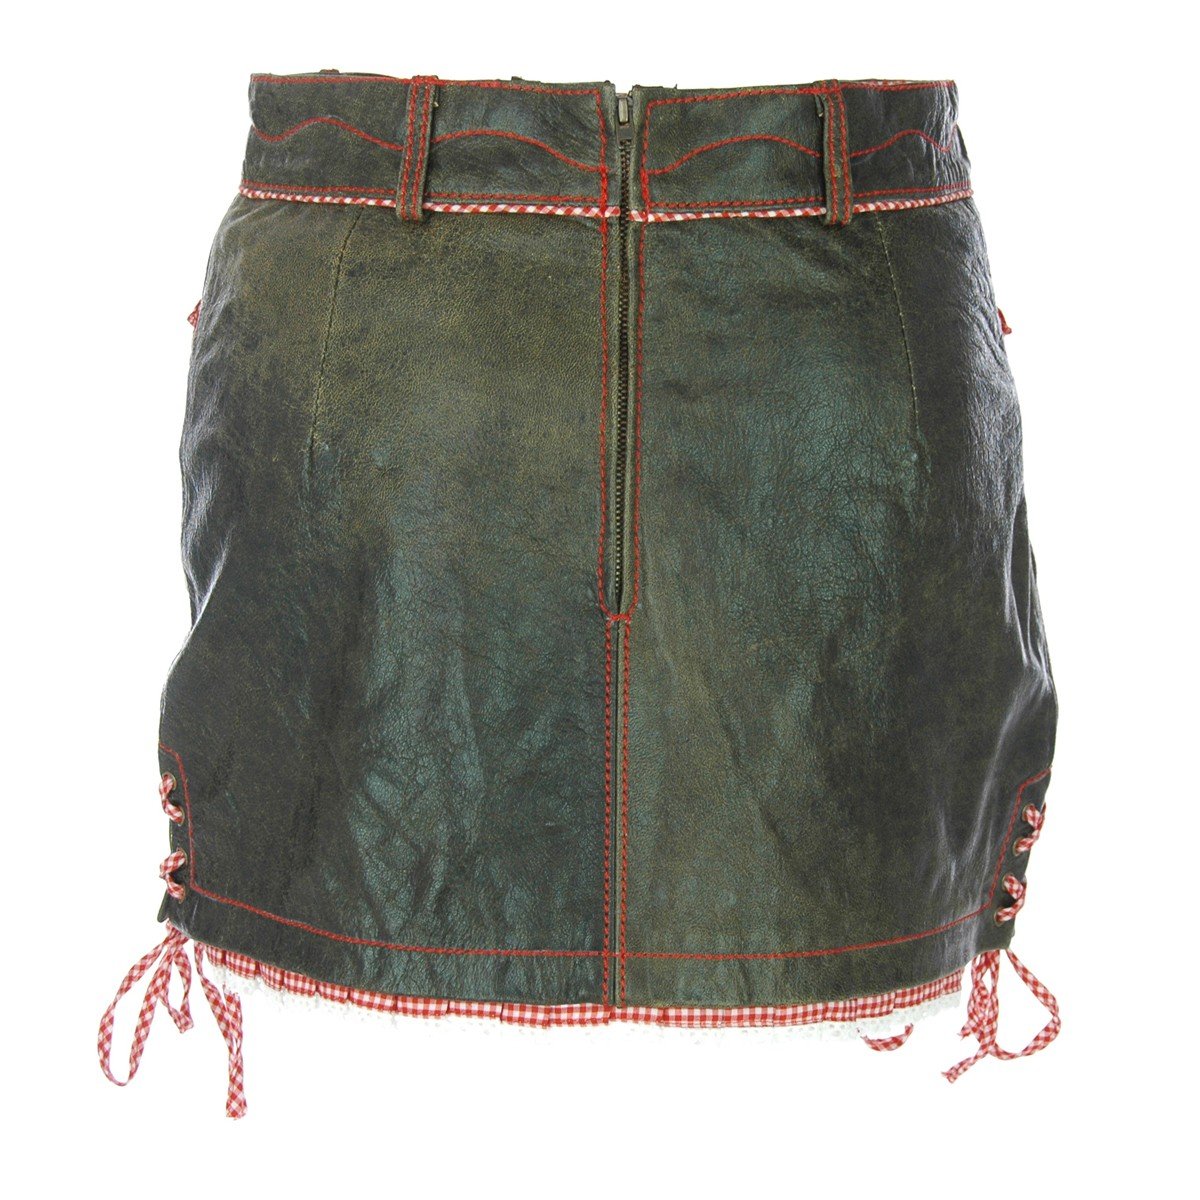 women-lederhosen-skirt-traditional-german-dress-back